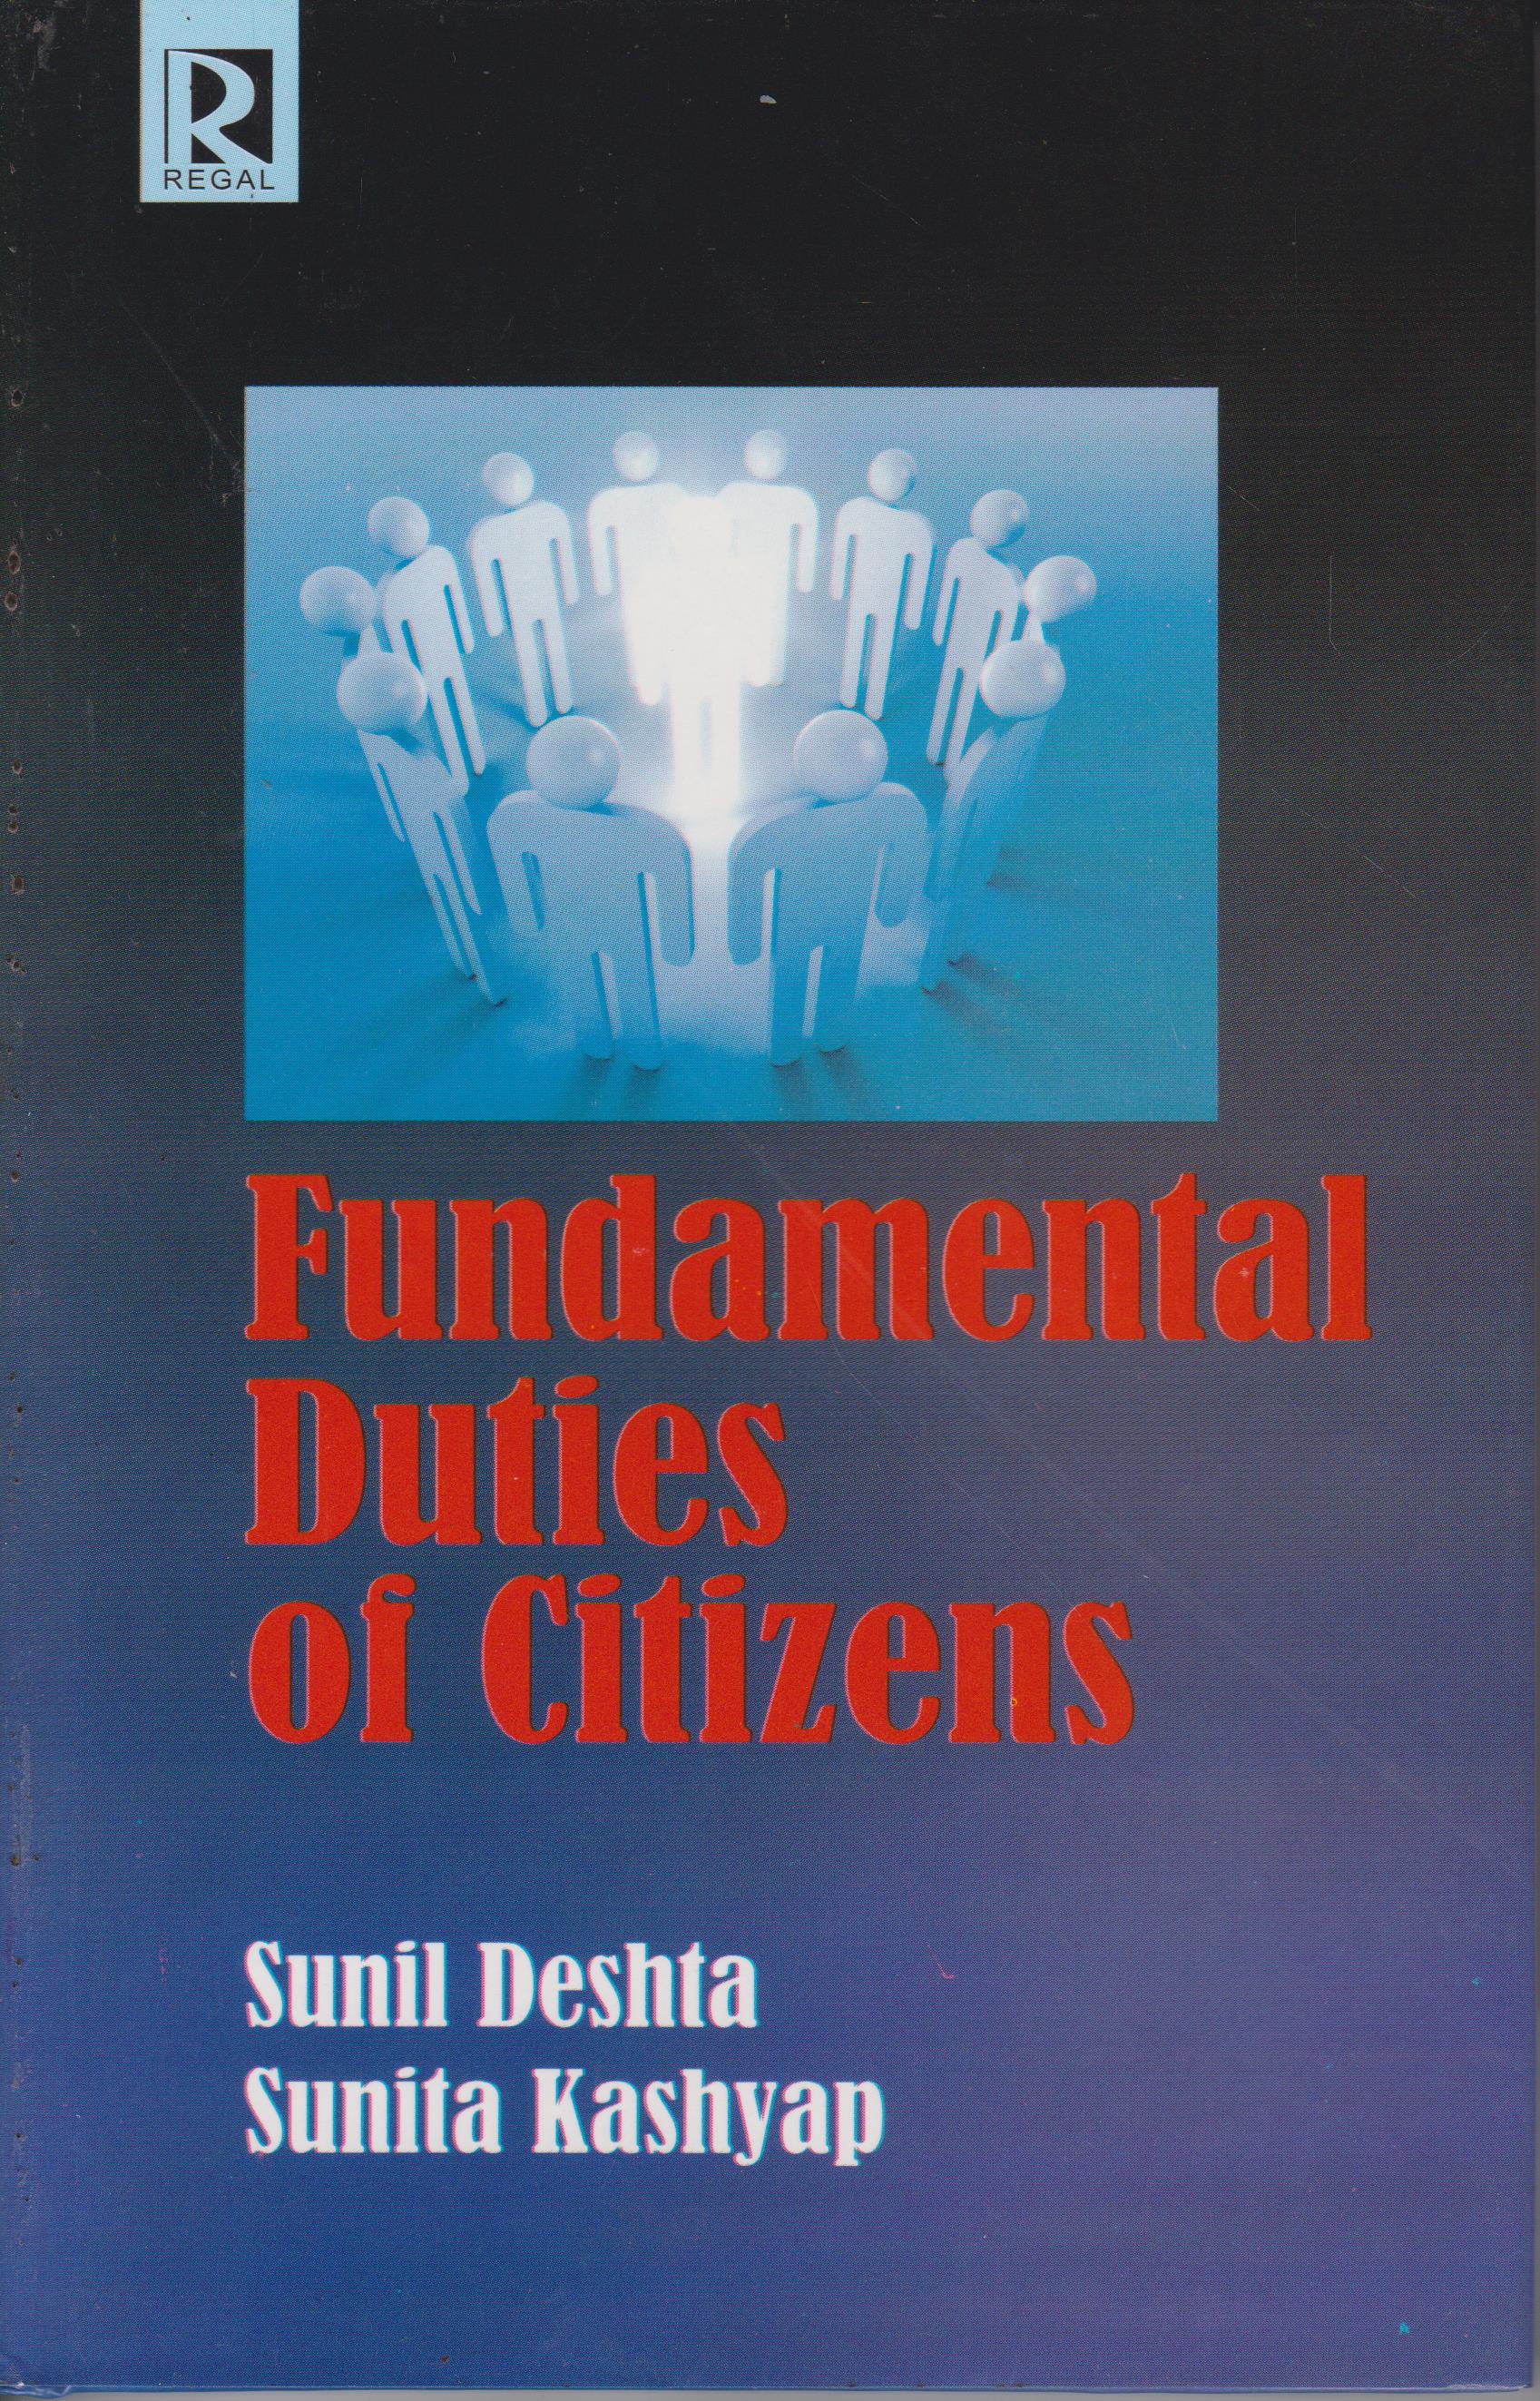 Fundamental Duties of Citizens